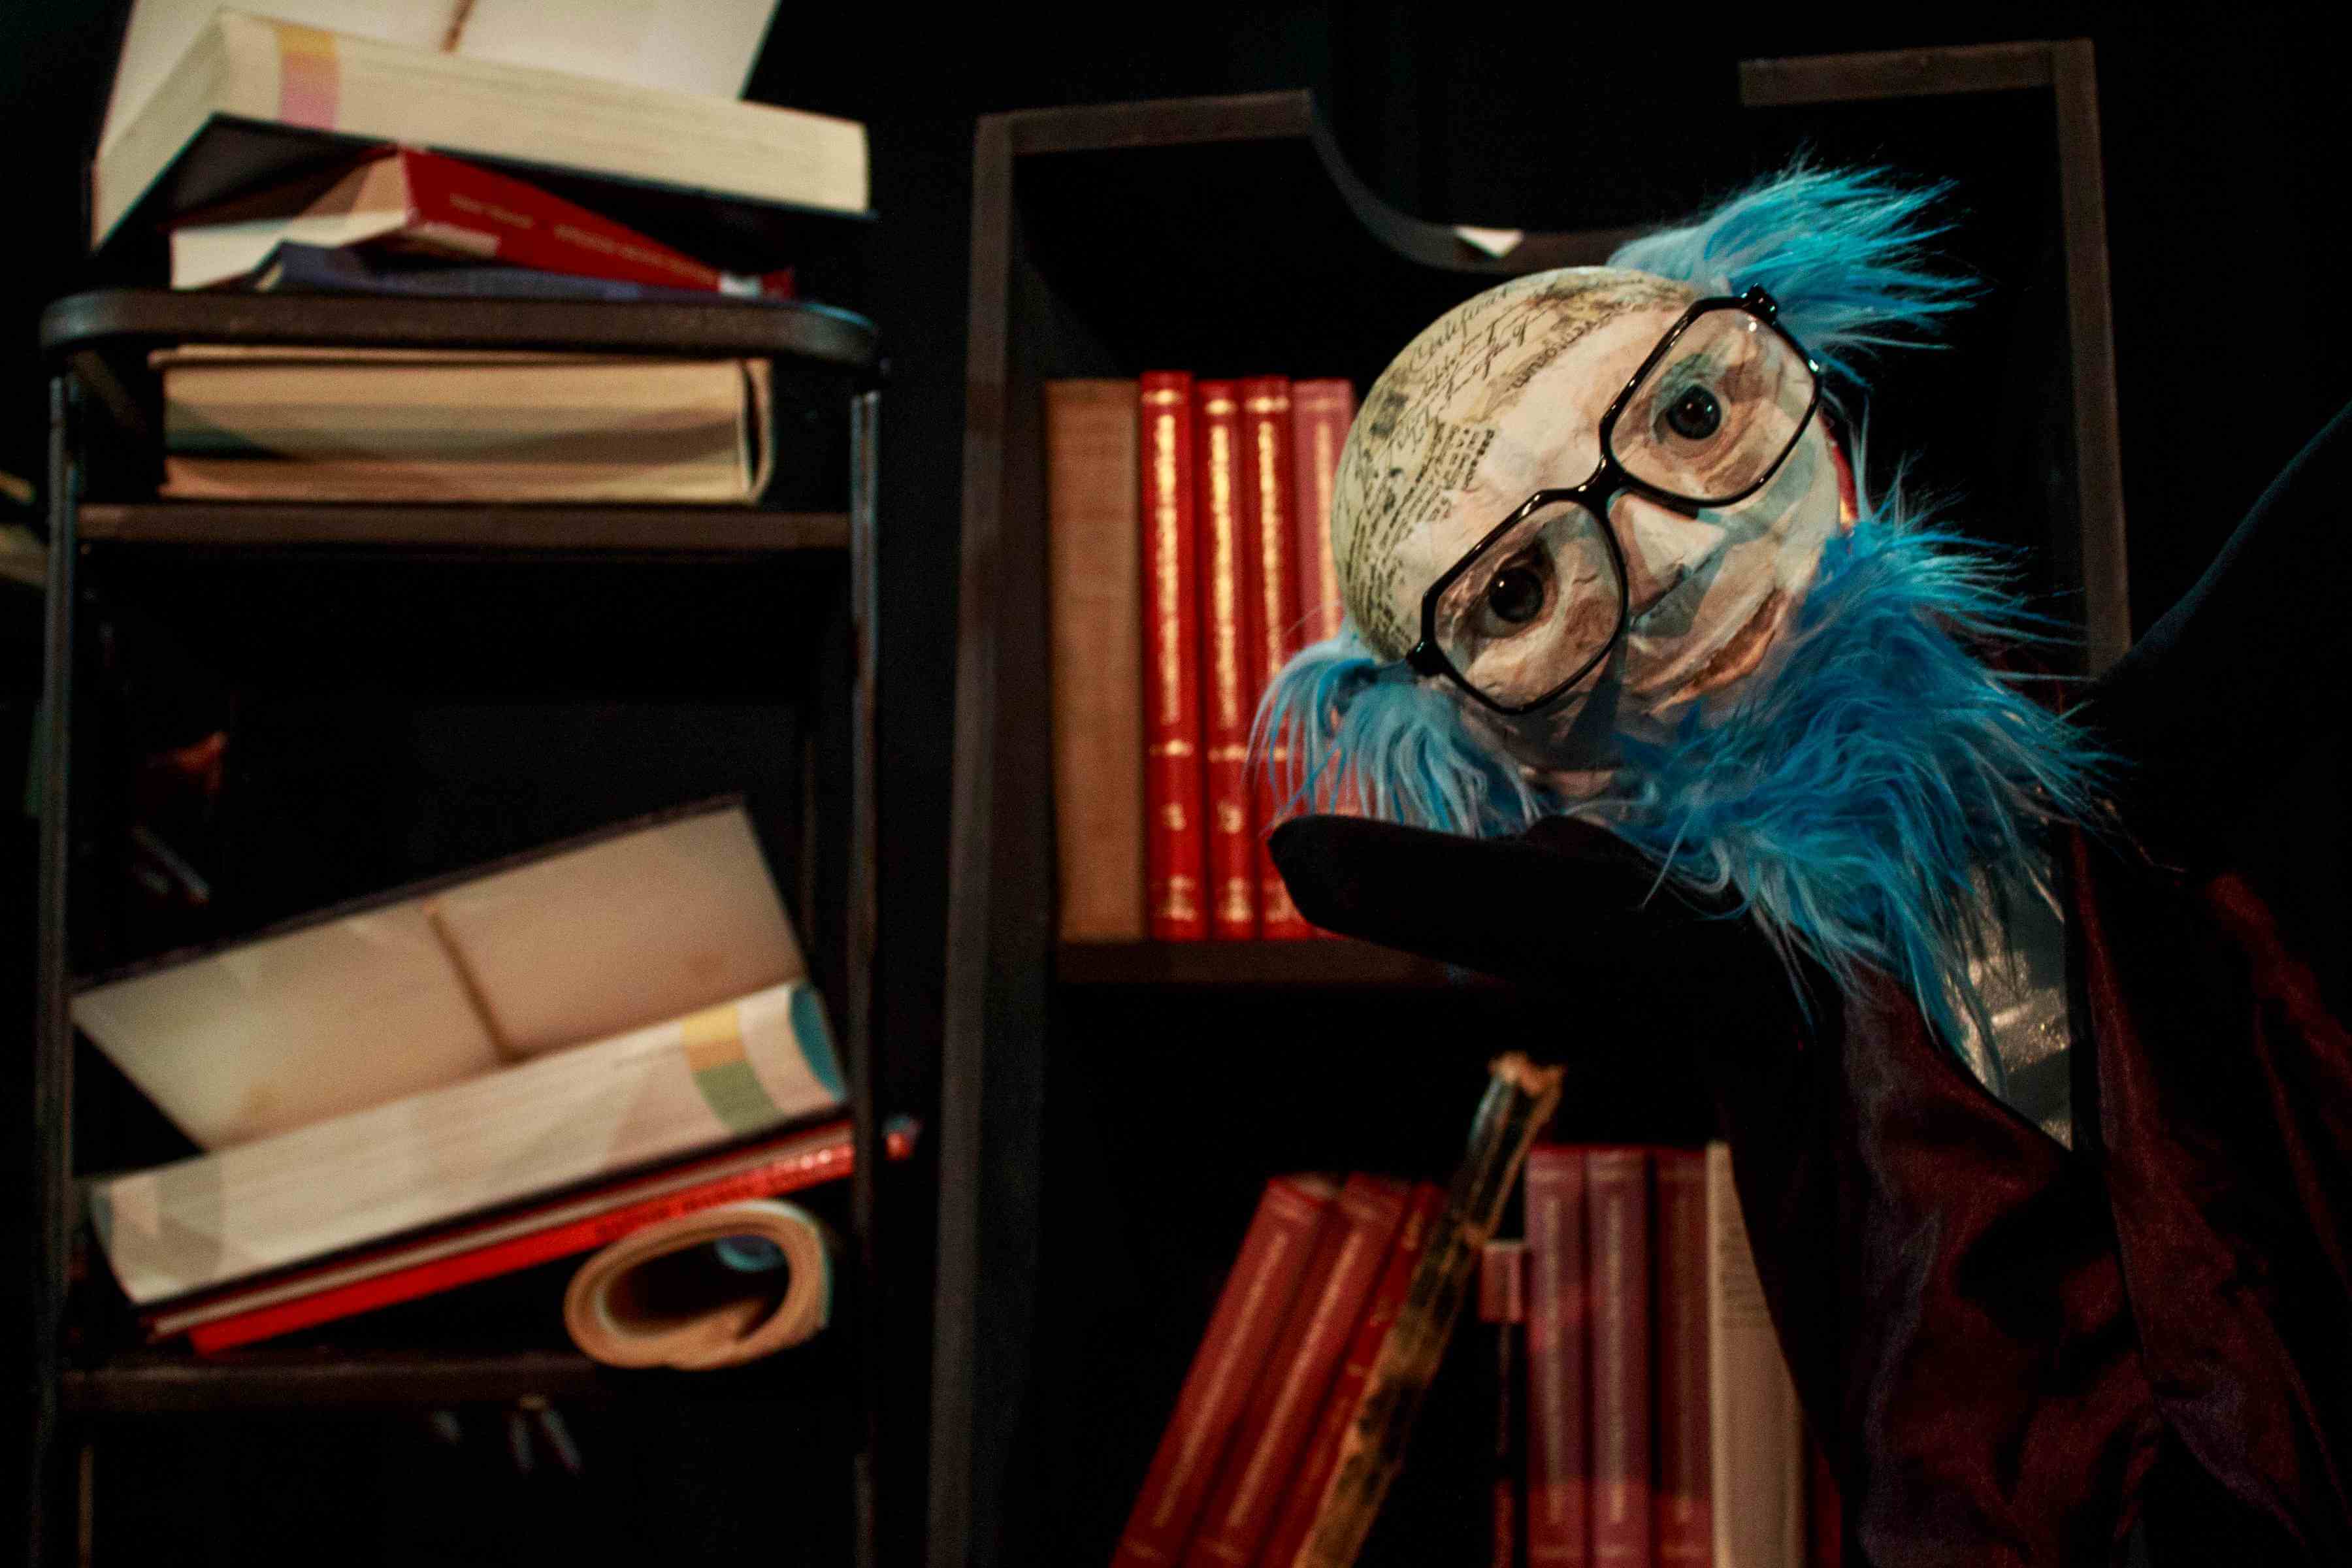 po prawej stronie znajduje się lalka przedstawiająca starca w okularach, niebieskich włosach i brodzie w czerwonej marynarce, ma on rozpostarte ręce i pogodny wyraz twarzy, za nim widoczne półki z książkami